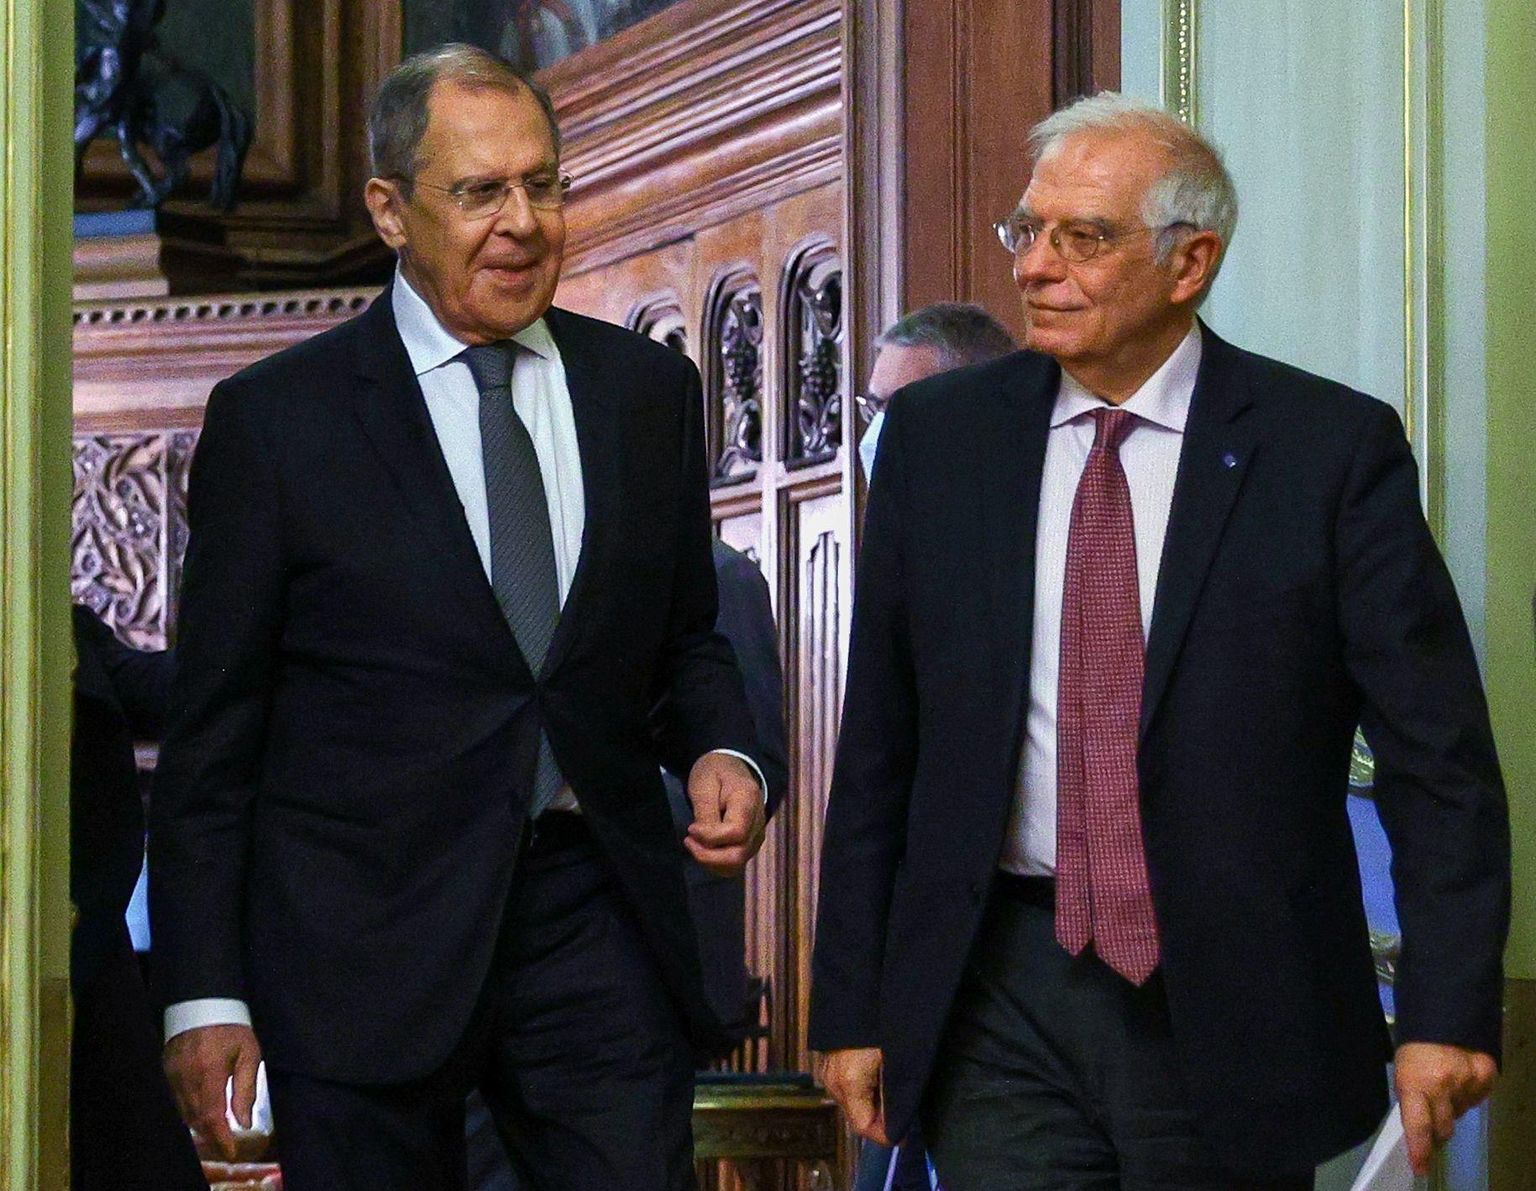 Välispoliitika asjatundjad peavad Josep Borrelli Moskva-visiiti ja kohtumist välisminister Sergei Lavroviga välispoliitiliseks katastroofiks.